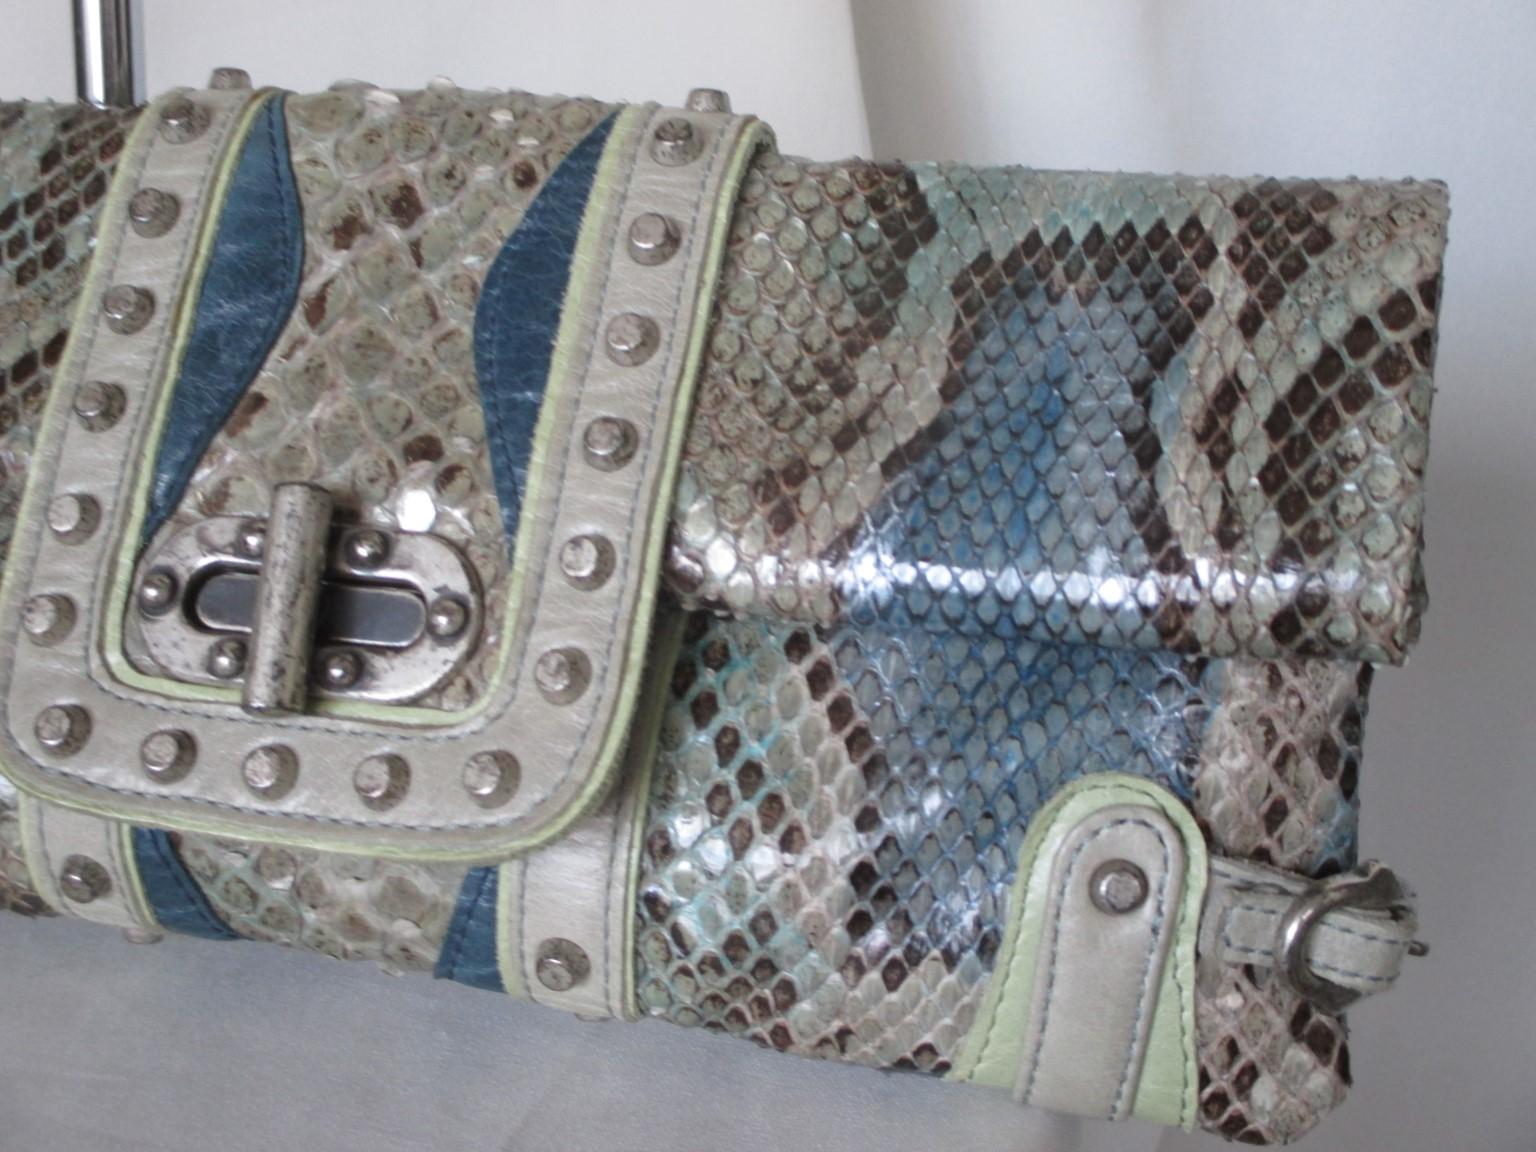 Cette pochette unique est réalisée en cuir de python teinté bleu/gris/vert/argent.

Nous offrons plus de sacs de luxe, de mode et de fourrures, consultez notre frontstore.

Détails :
Entièrement doublé 
Avec frange et poignée amovibles
Matériel et